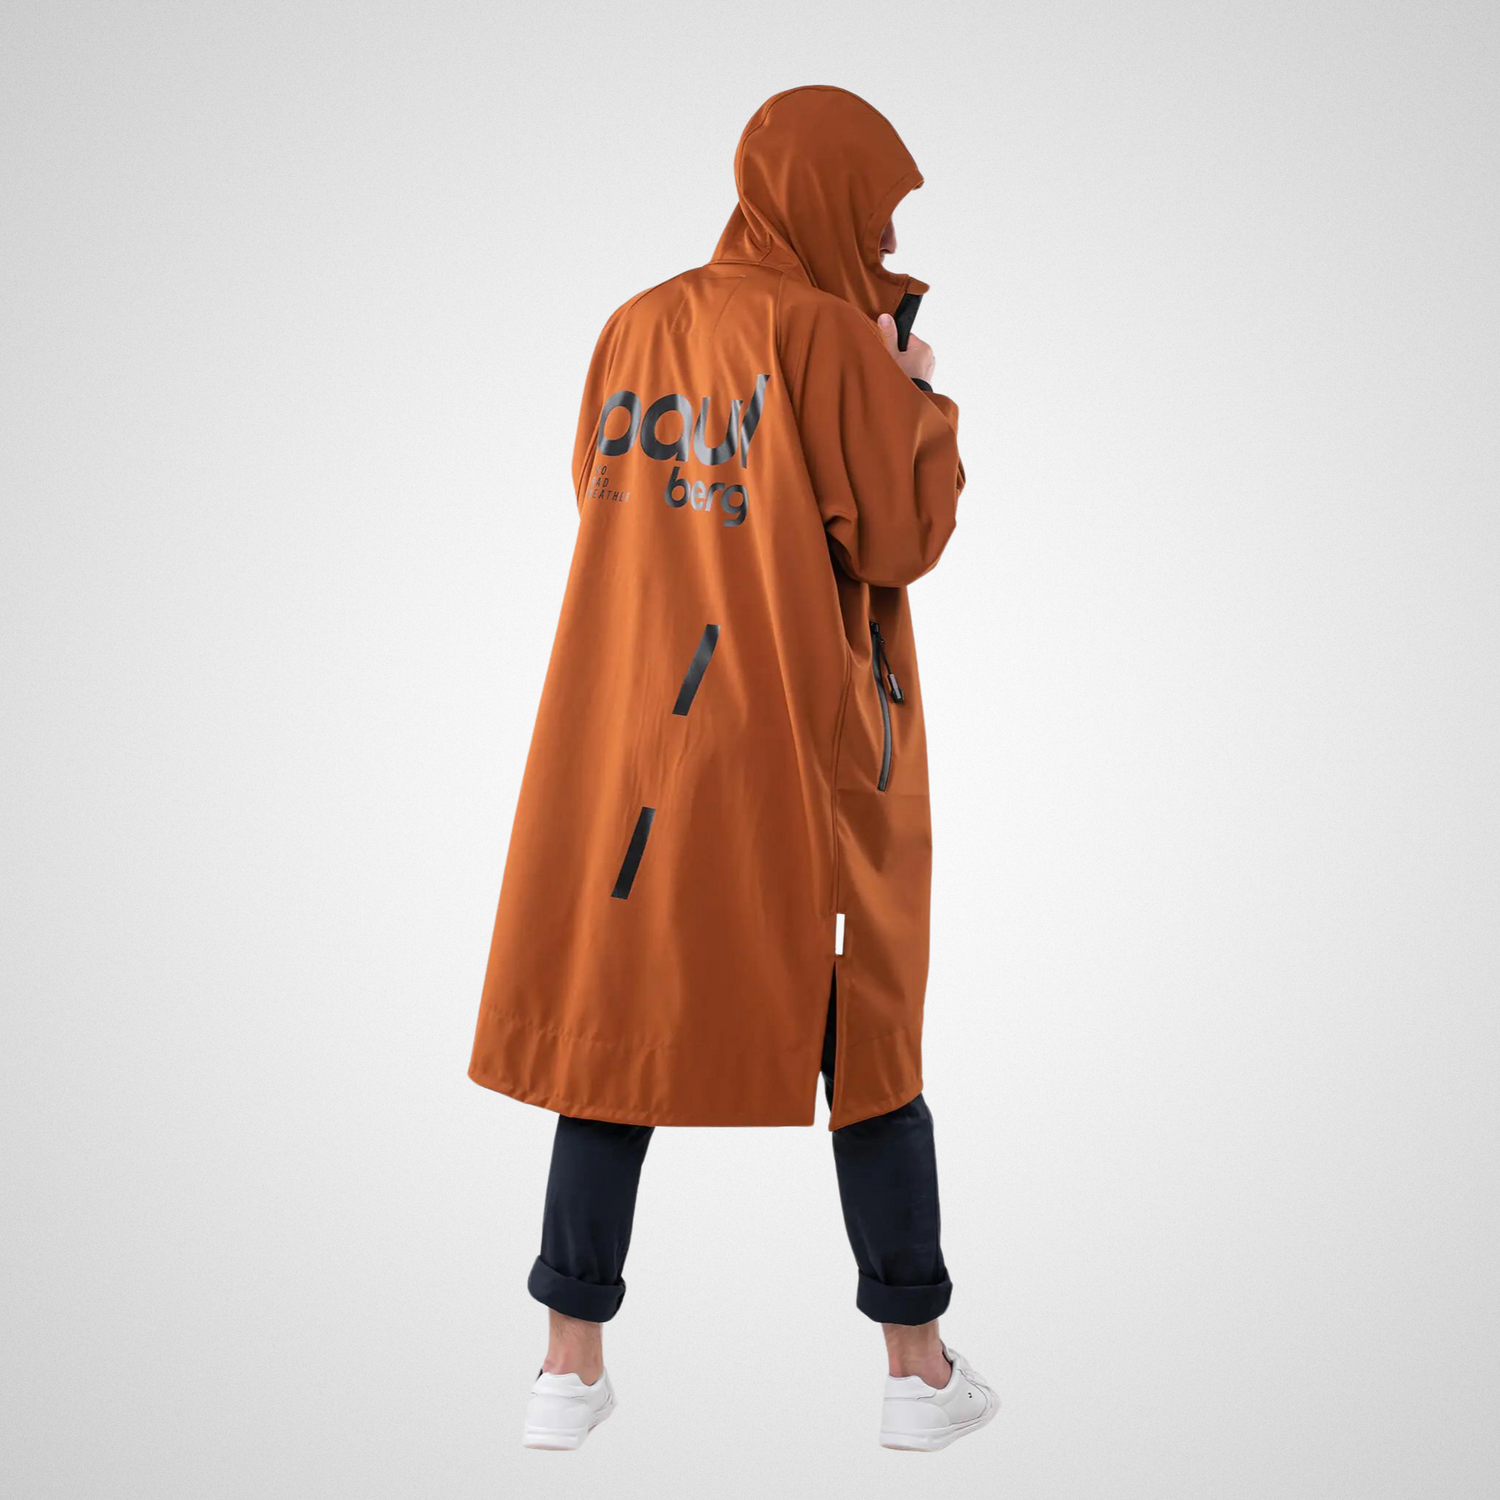 Paul Berg - Light Outdoor vaatteidenvaihto takki - välikausi - Oranssi